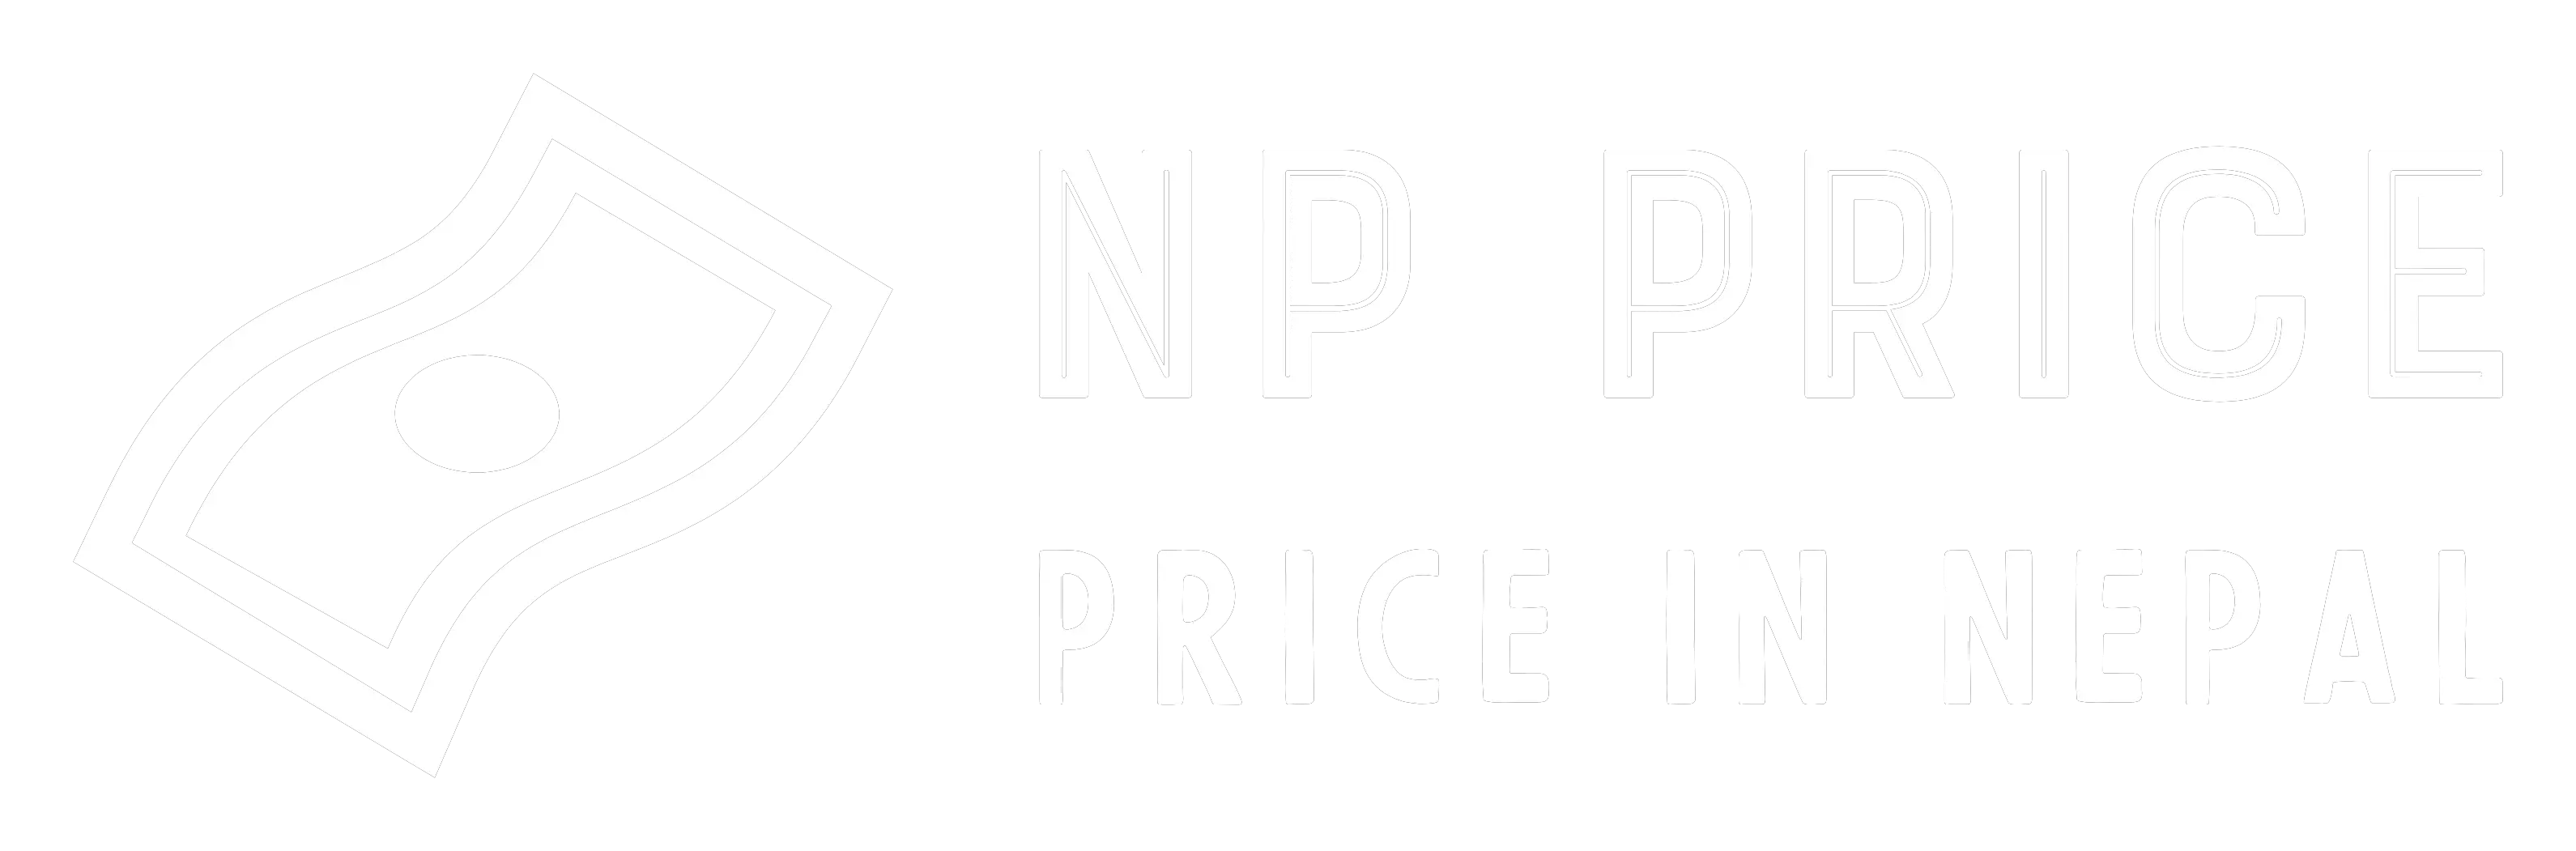 Price In Nepal